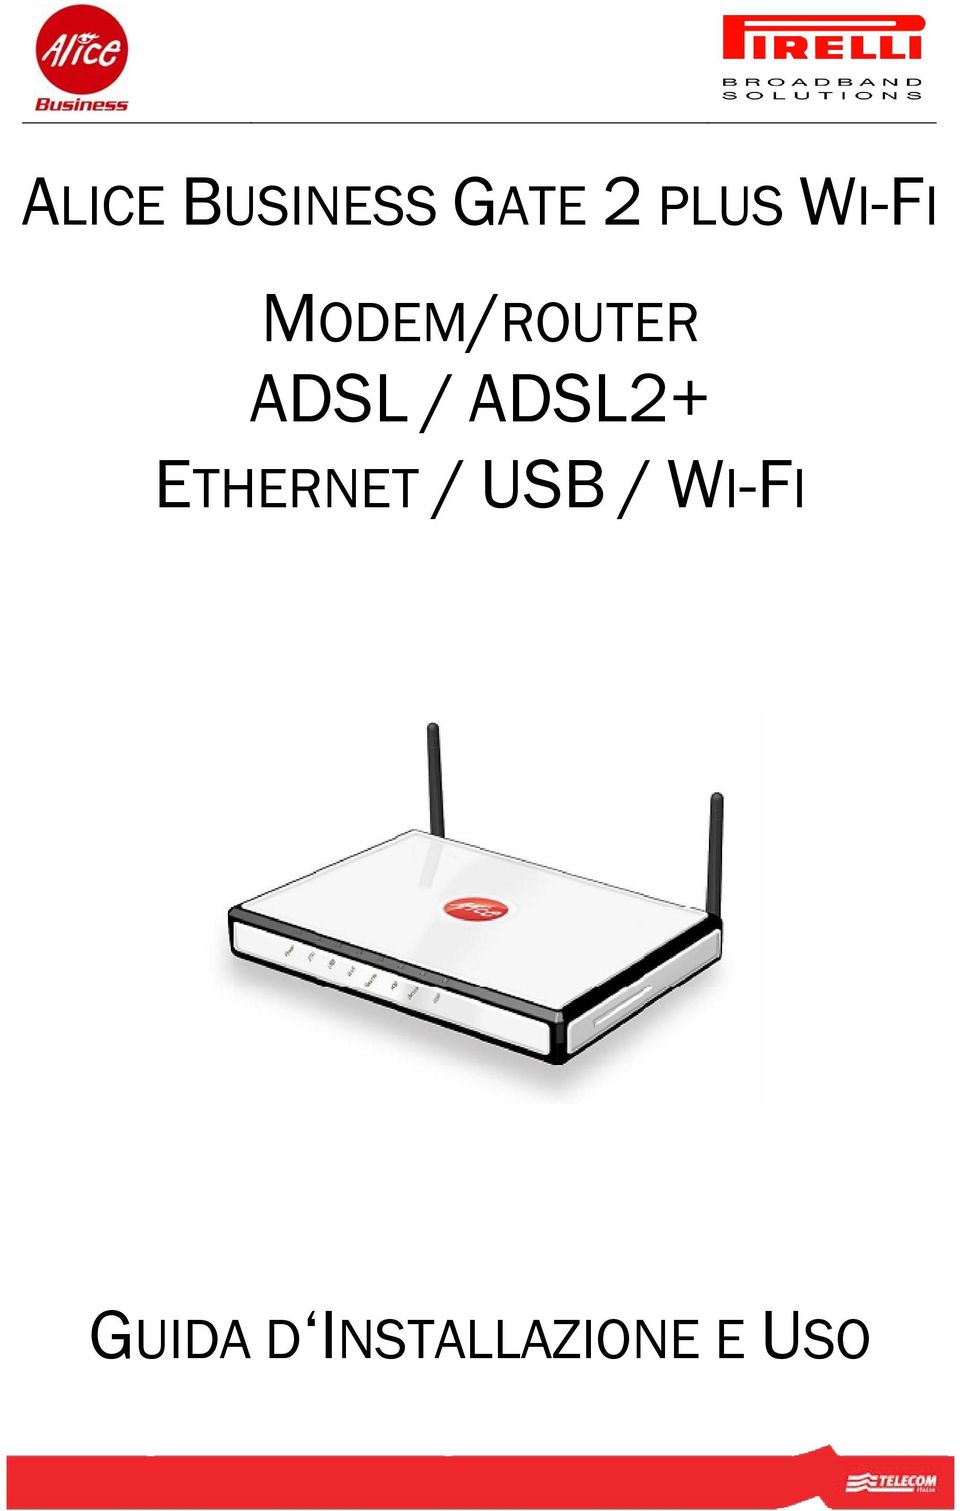 ADSL2+ ETHERNET / USB /